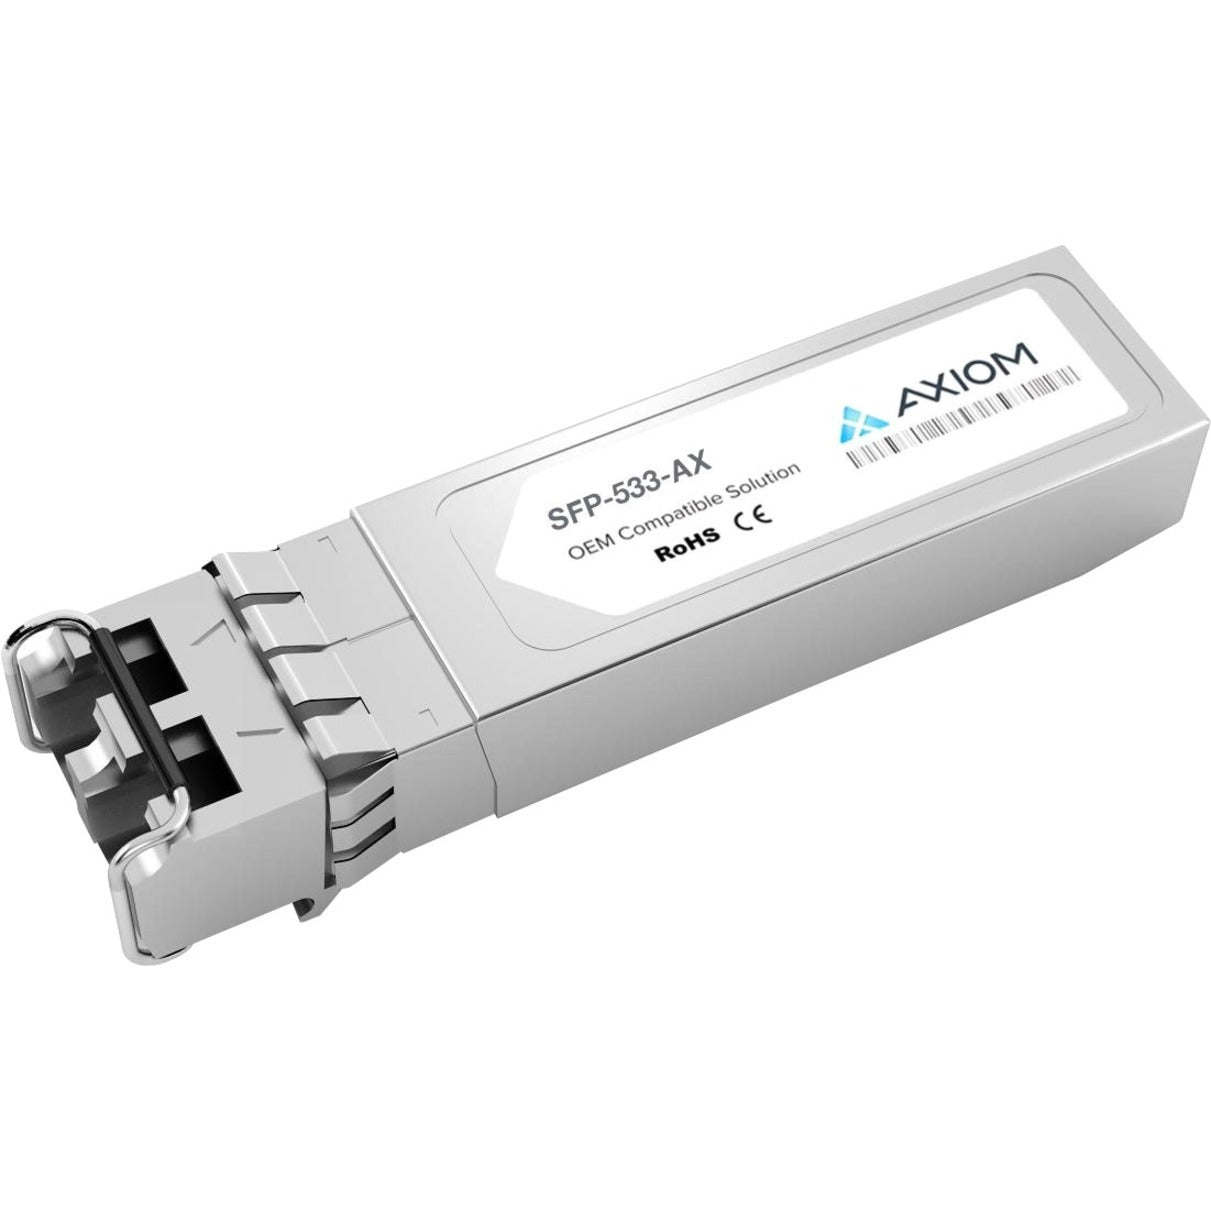 Axiom SFP-533-AX 10GBASE-LR SFP+ Transceiver for Gigamon, Single-mode, Optical Fiber